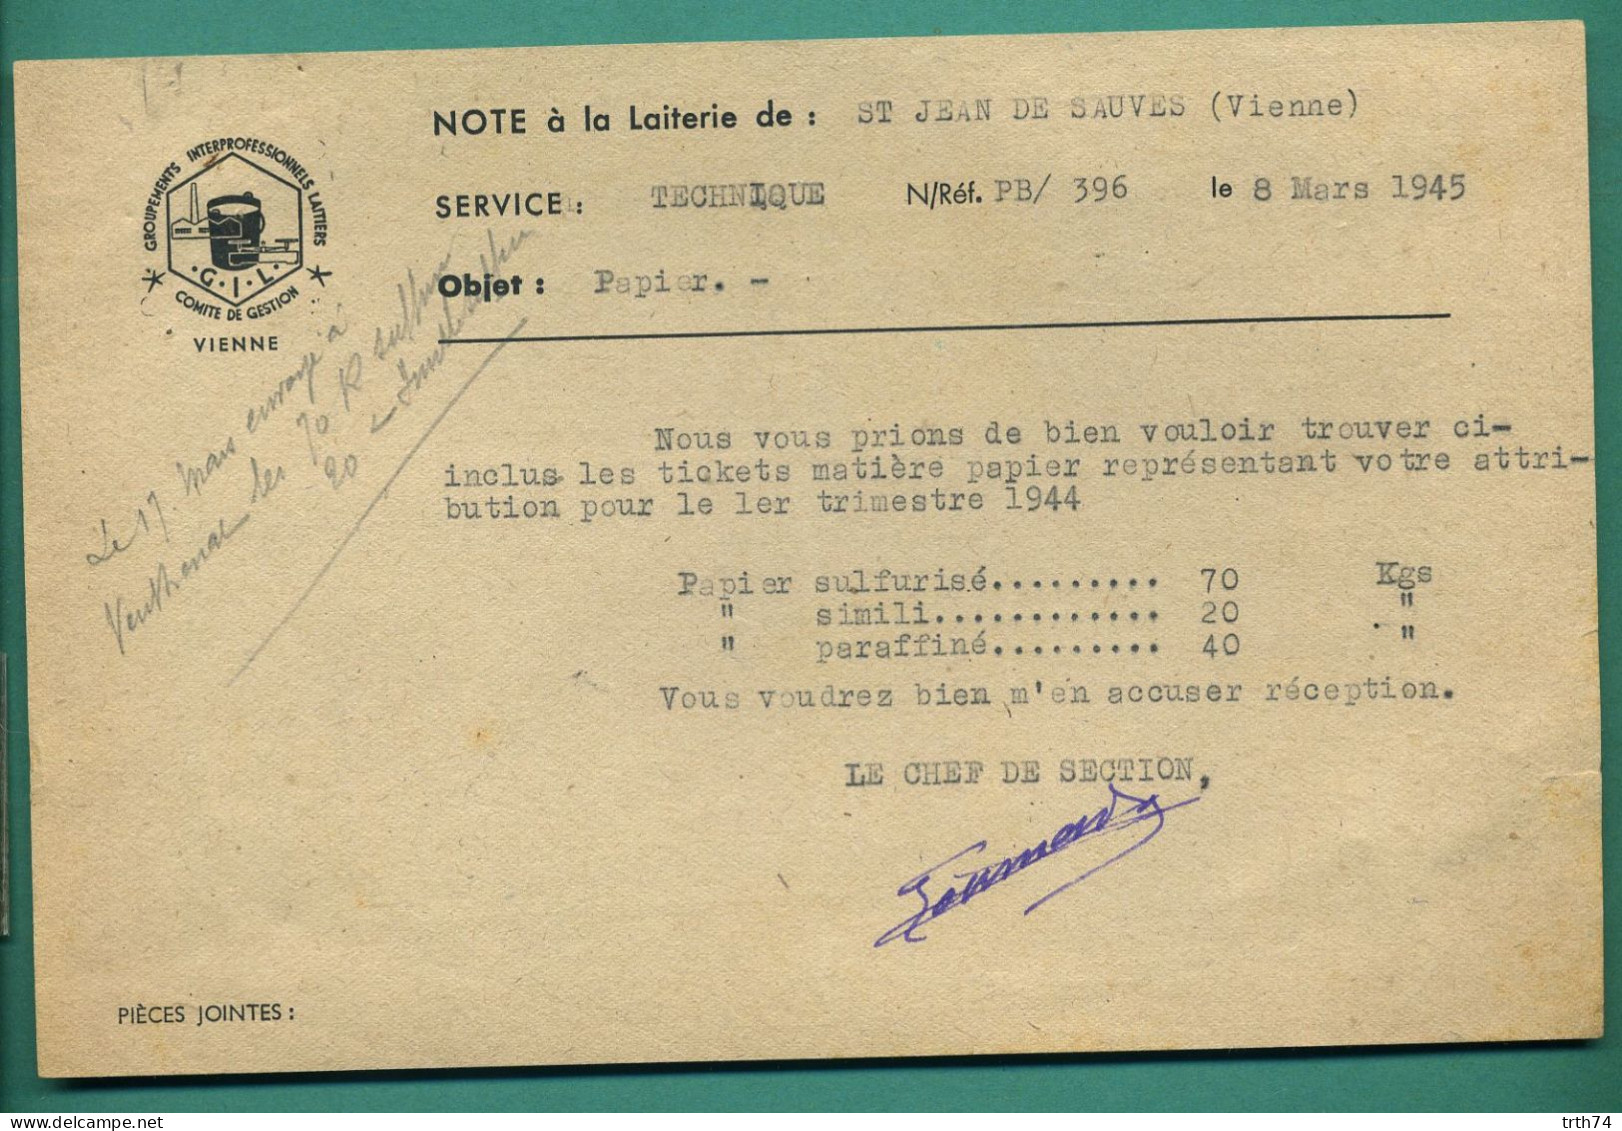 86 Saint Jean De Sauves Groupements Interprofessionnels Laitiers Note à La Laiterie 8 Mars 1945 - Alimentare